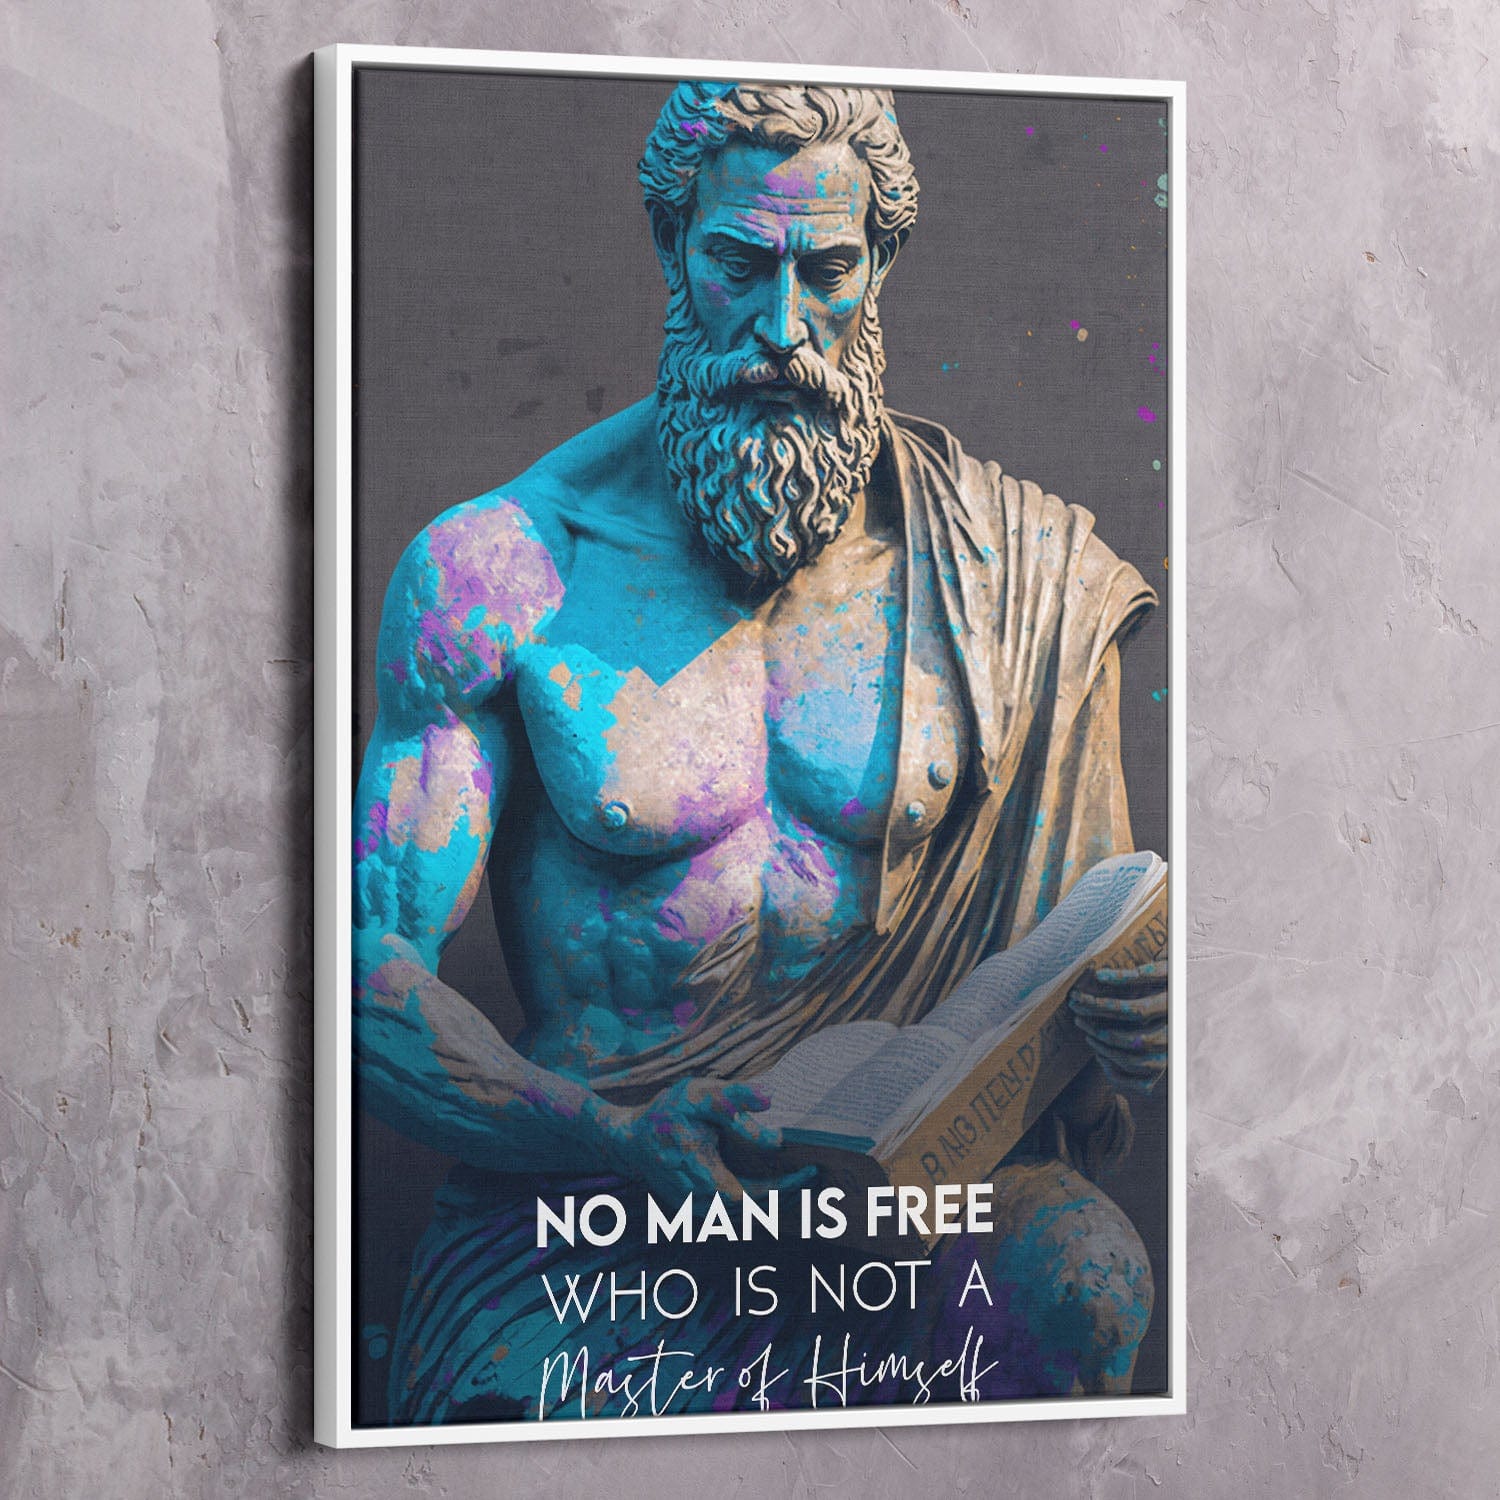 Epictetus - No Man is Free Quote Wall Art | Inspirational Wall Art Motivational Wall Art Quotes Office Art | ImpaktMaker Exclusive Canvas Art Portrait